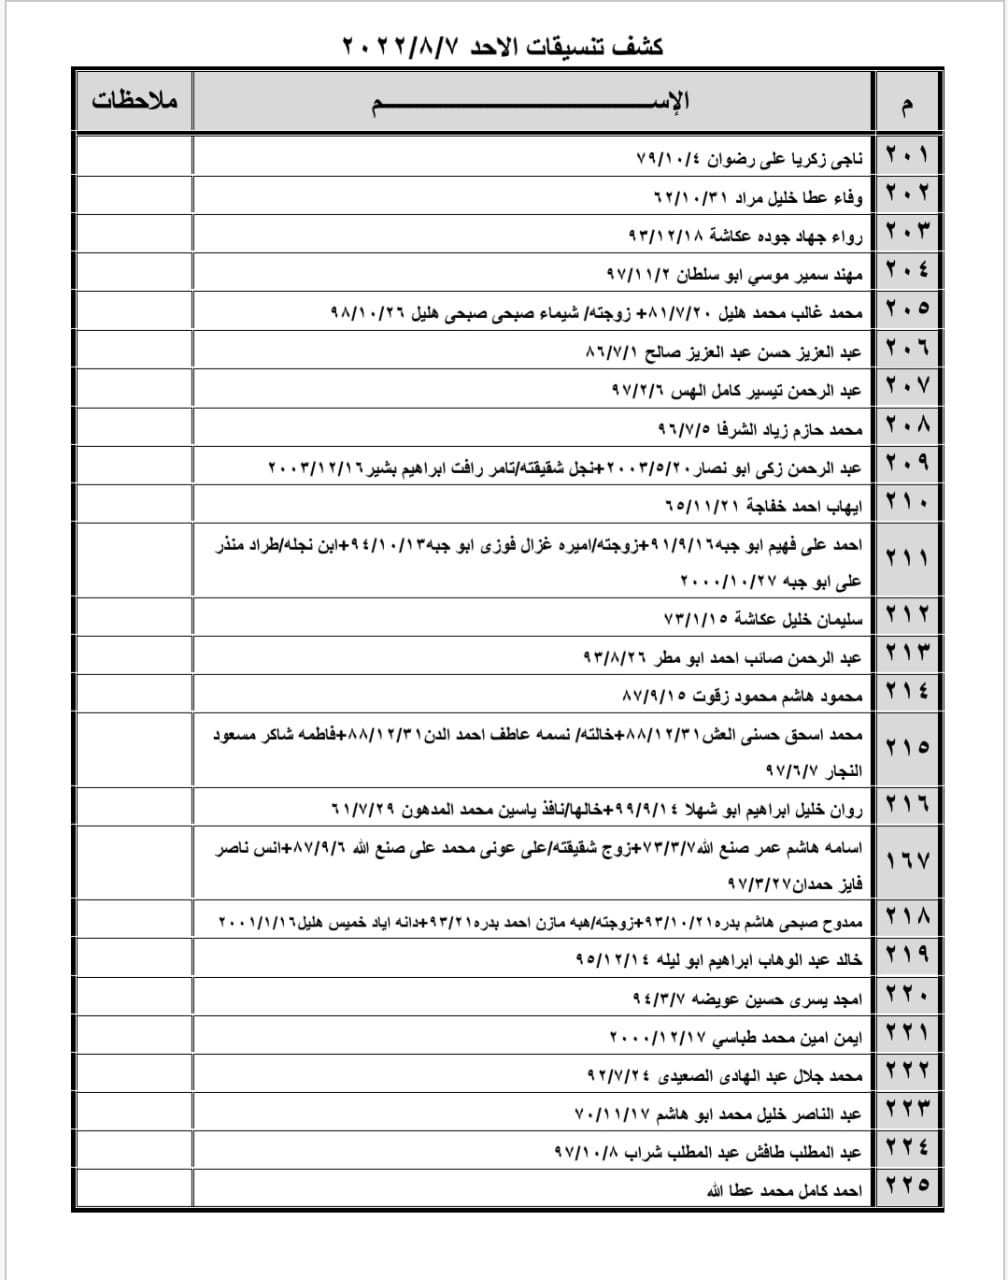 بالأسماء: كشف "تنسيقات مصرية" للسفر عبر معبر رفح الأحد 7 أغسطس 2022